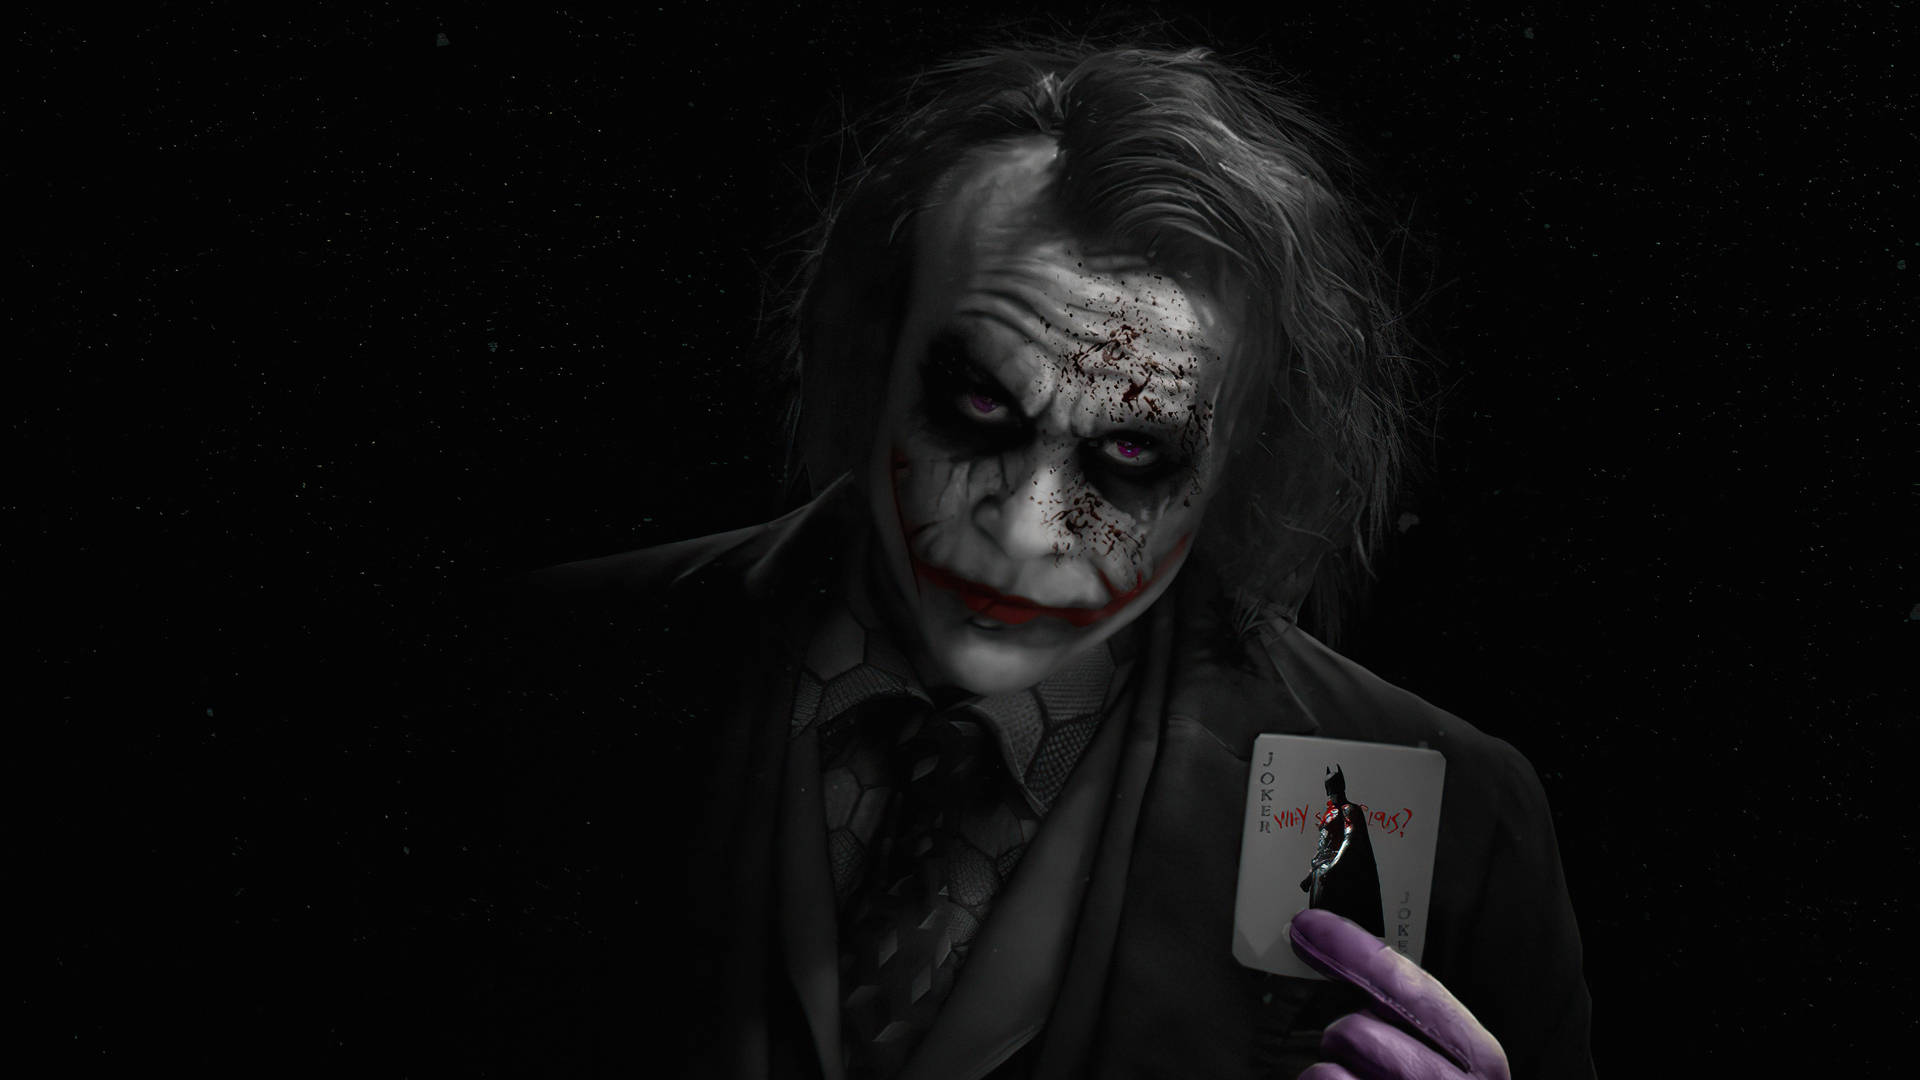 Heath Ledger In Black Ultra Hd Joker Costume Wallpaper